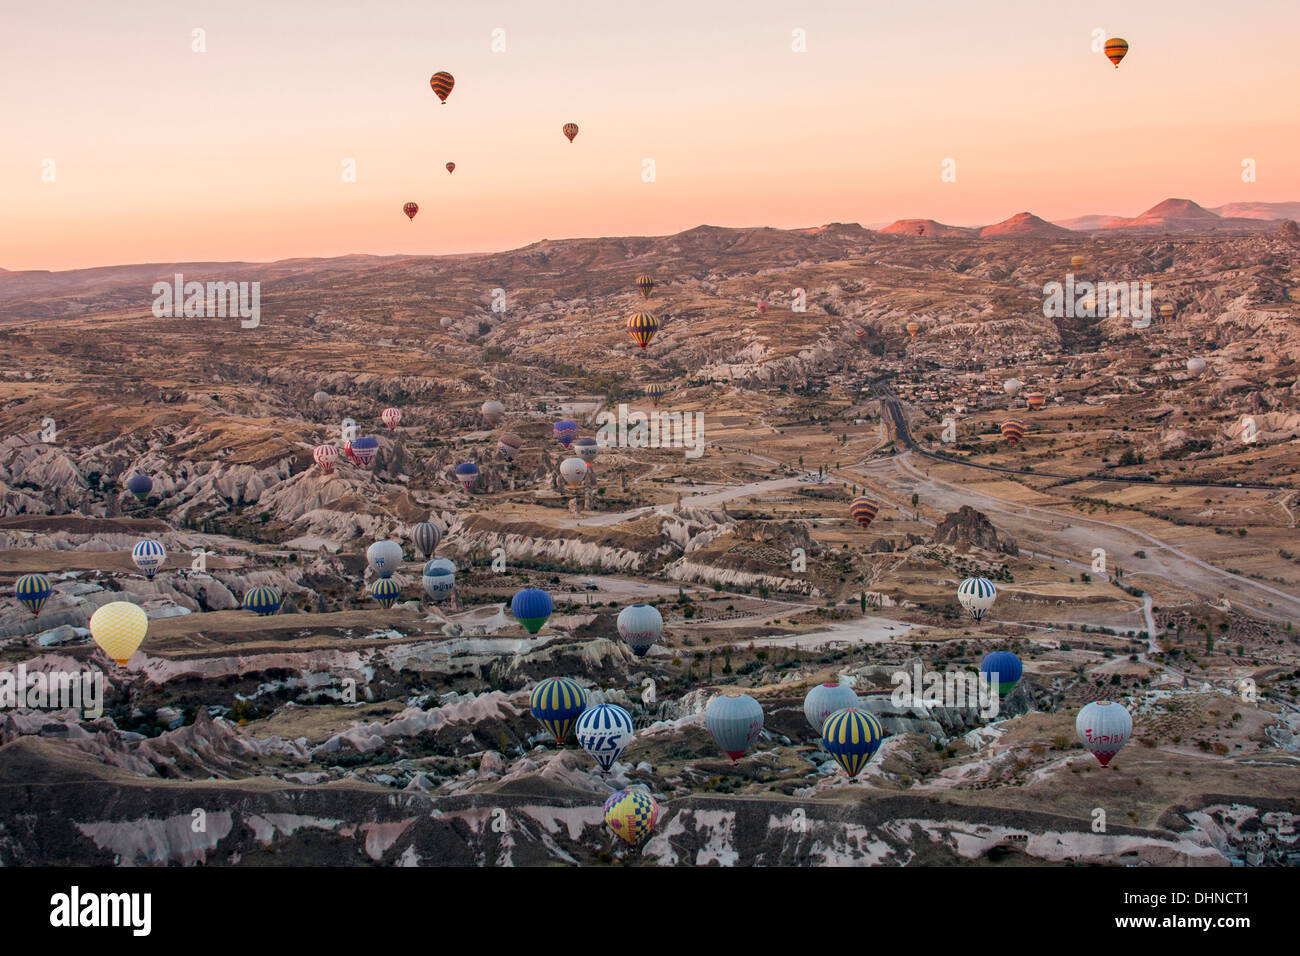 Am frühen Morgen eine Ballonfahrt über Cappadocia in Zentral-Anatolien, Türkei. Stockfoto